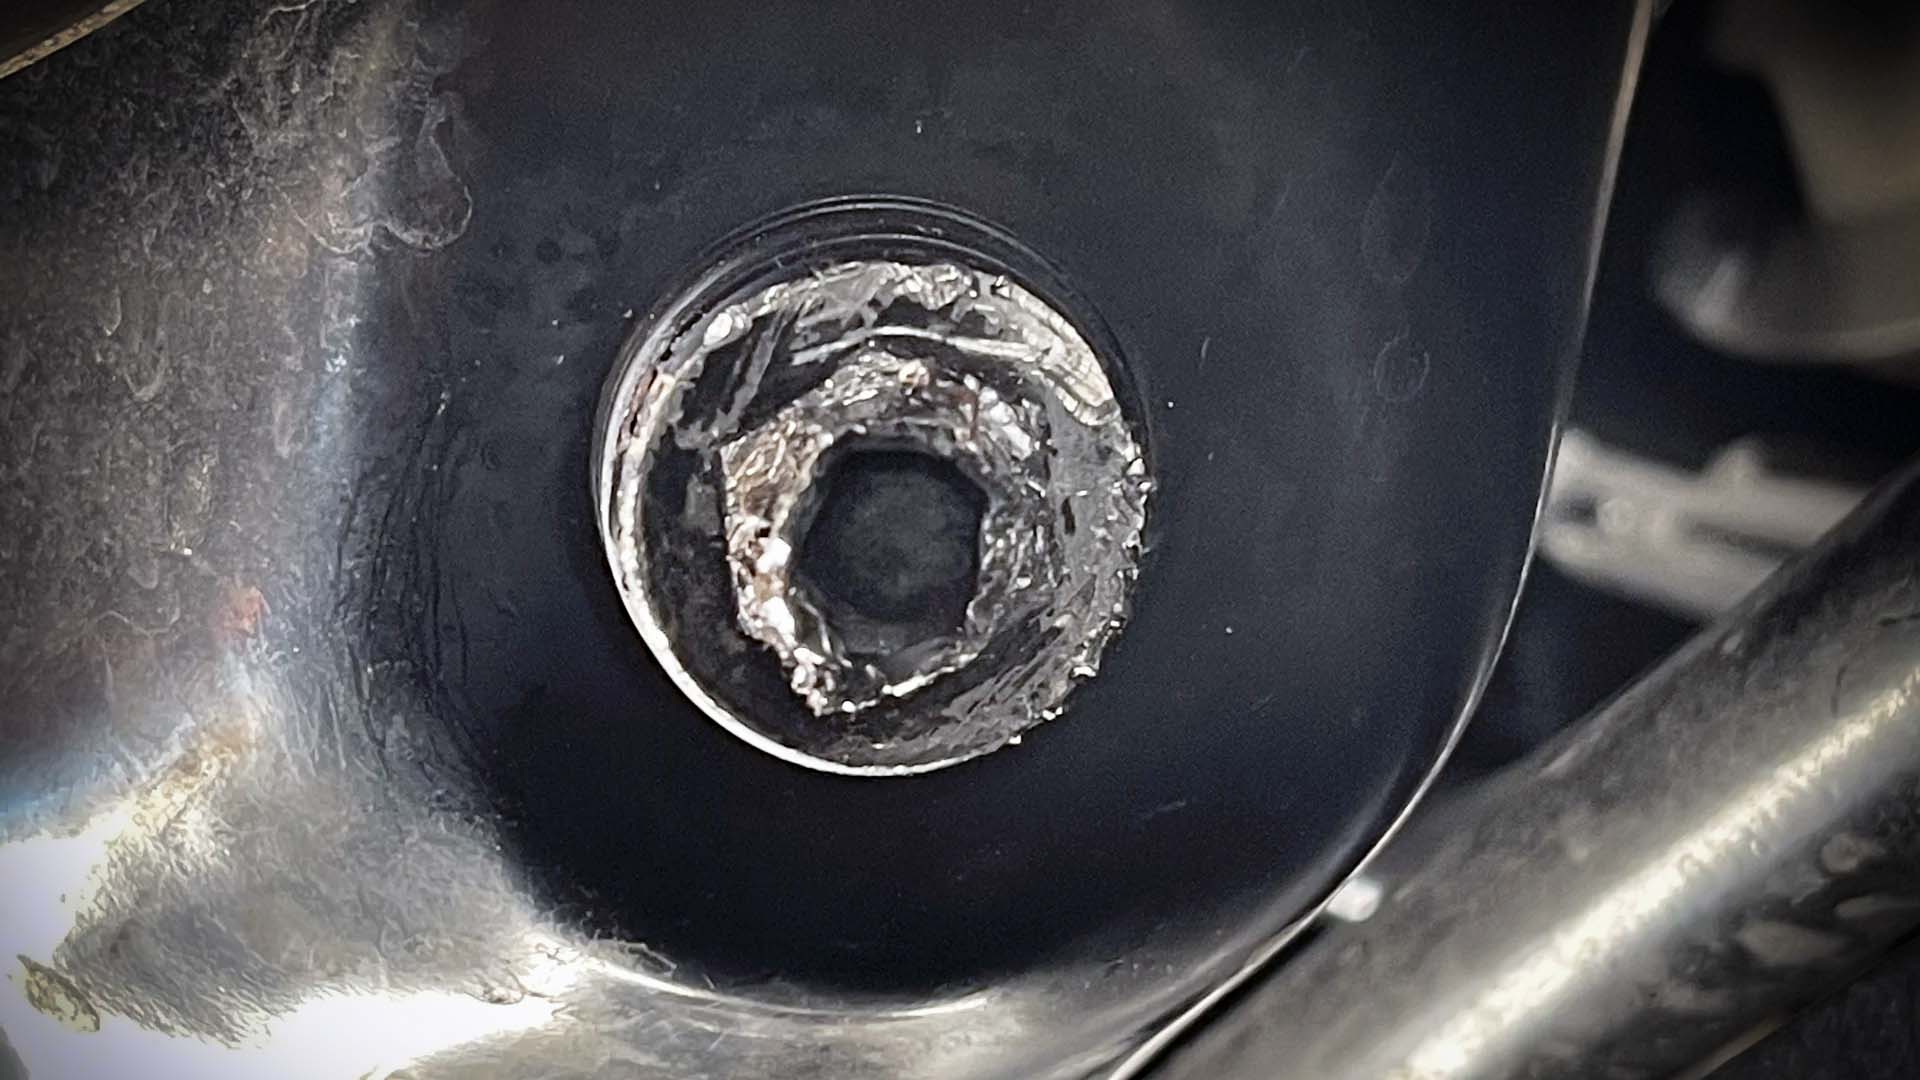 Stripped oil drain plug